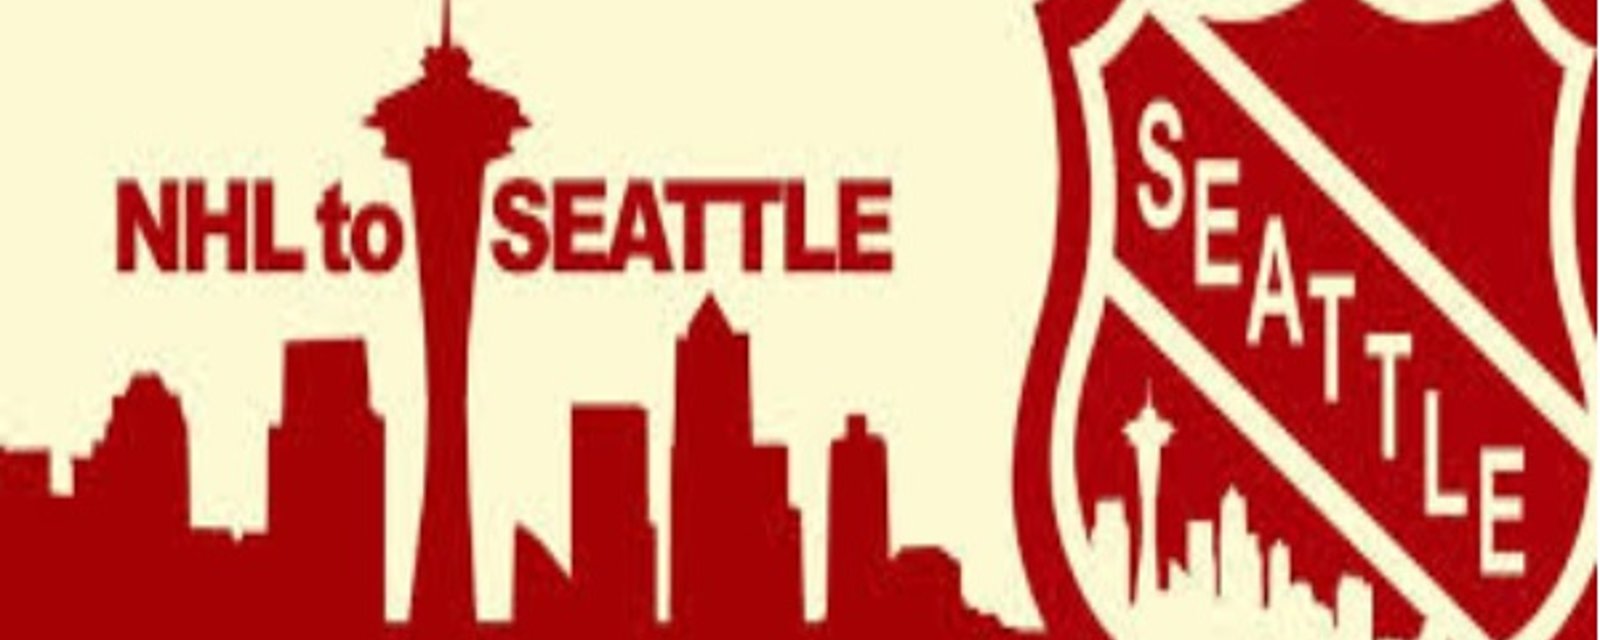 Nom et logo possibles pour la prochaine expansion: Les Pilots de Seattle